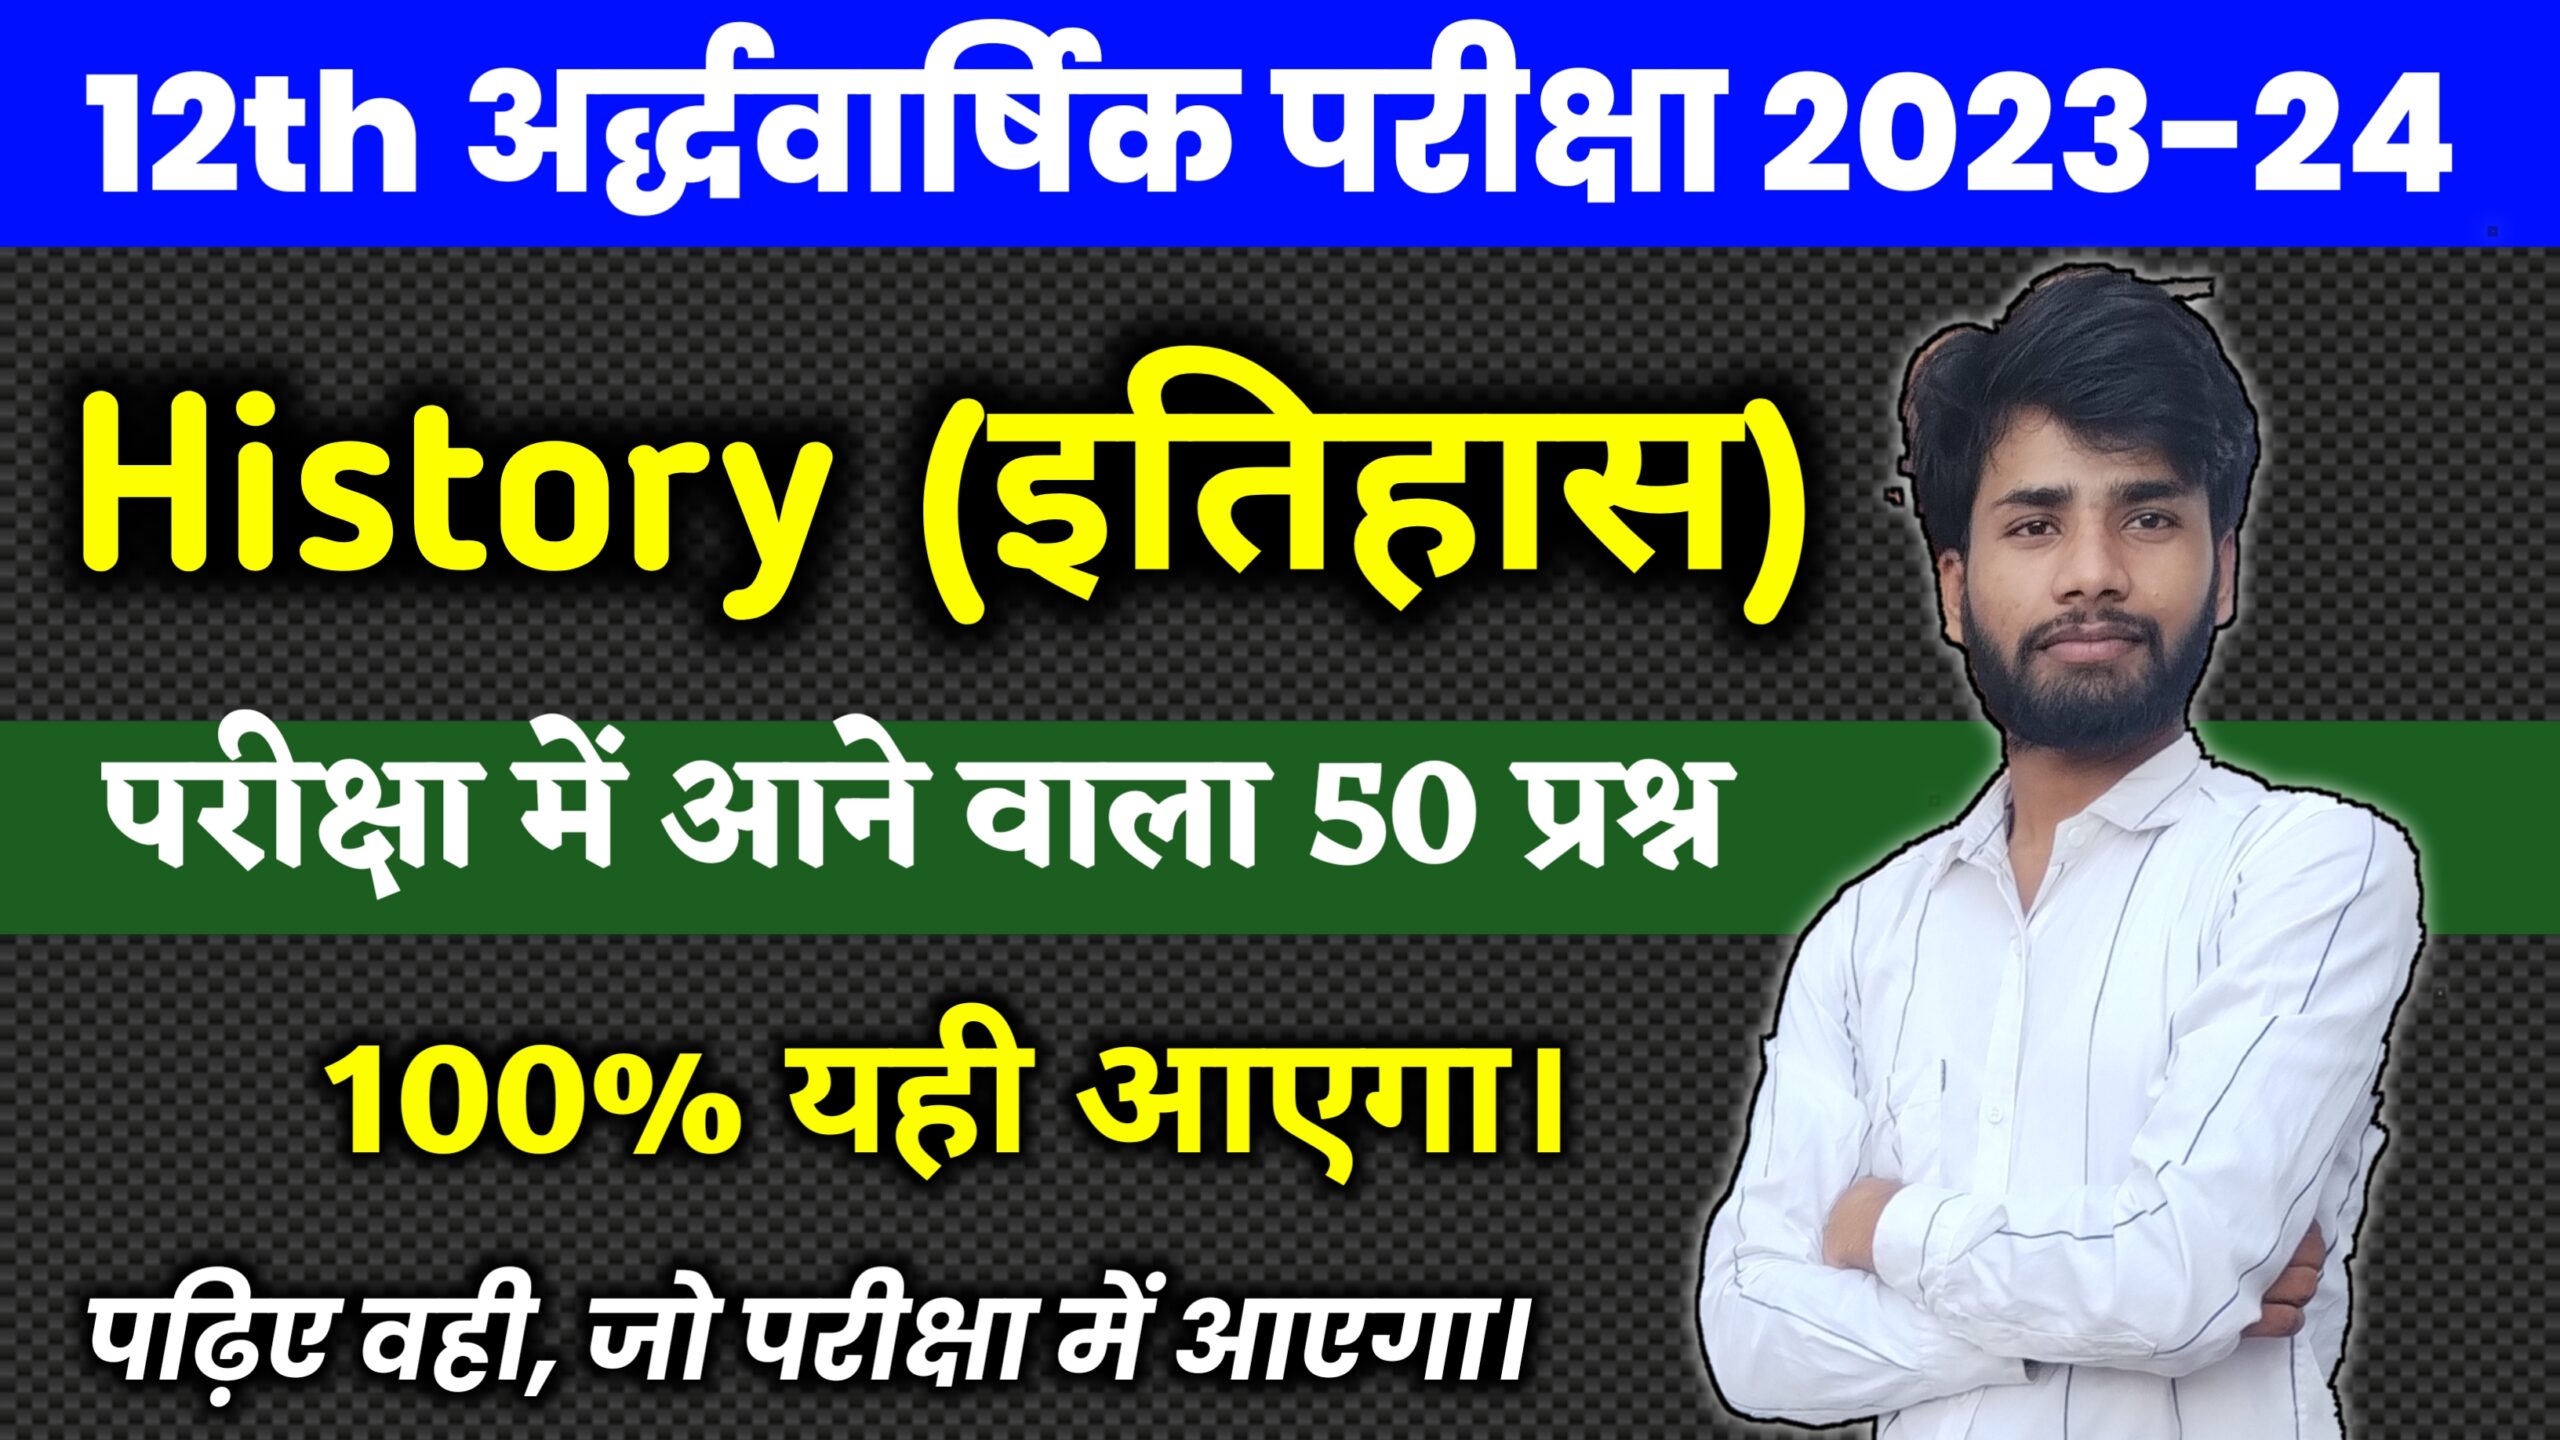 Bihar Board 12th History Half Year Exam 2023-24 : इतिहास के 50 प्रश्न याद कर लो, यही प्रश्न मासिक परीक्षा 2023 में पूछा जाएगा।